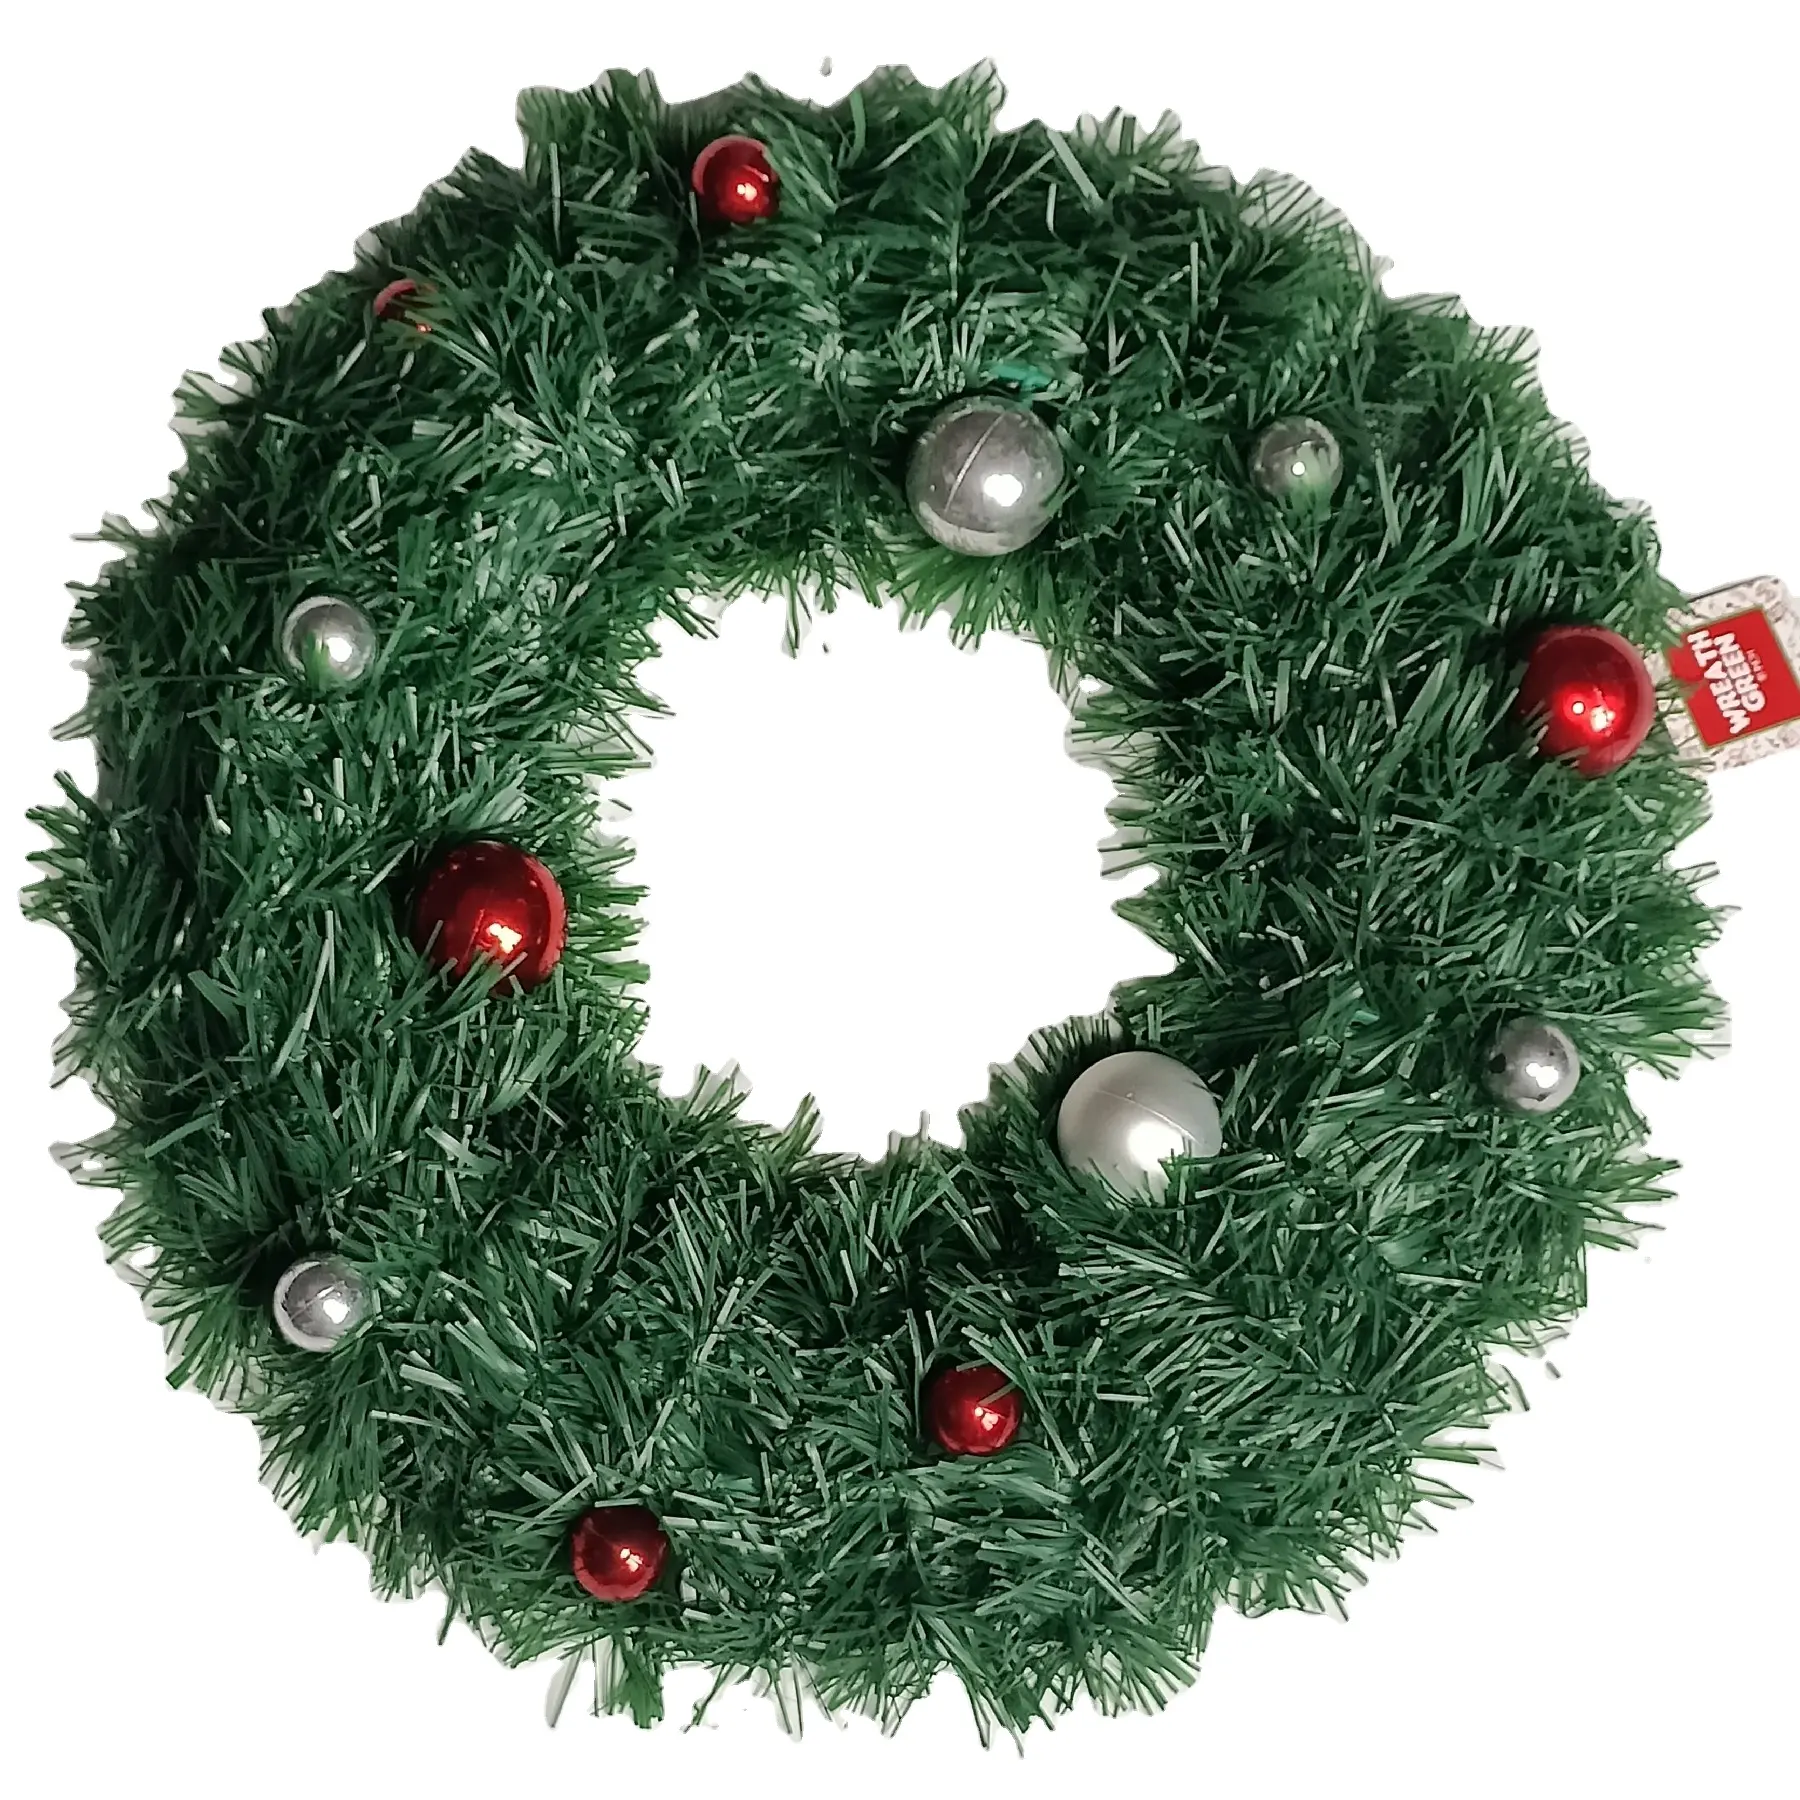 Hot Christmas Wreath For Front Door National Tree Company Wreath Cordless Christmas Xmas Wreath Reef Outdoor Windows